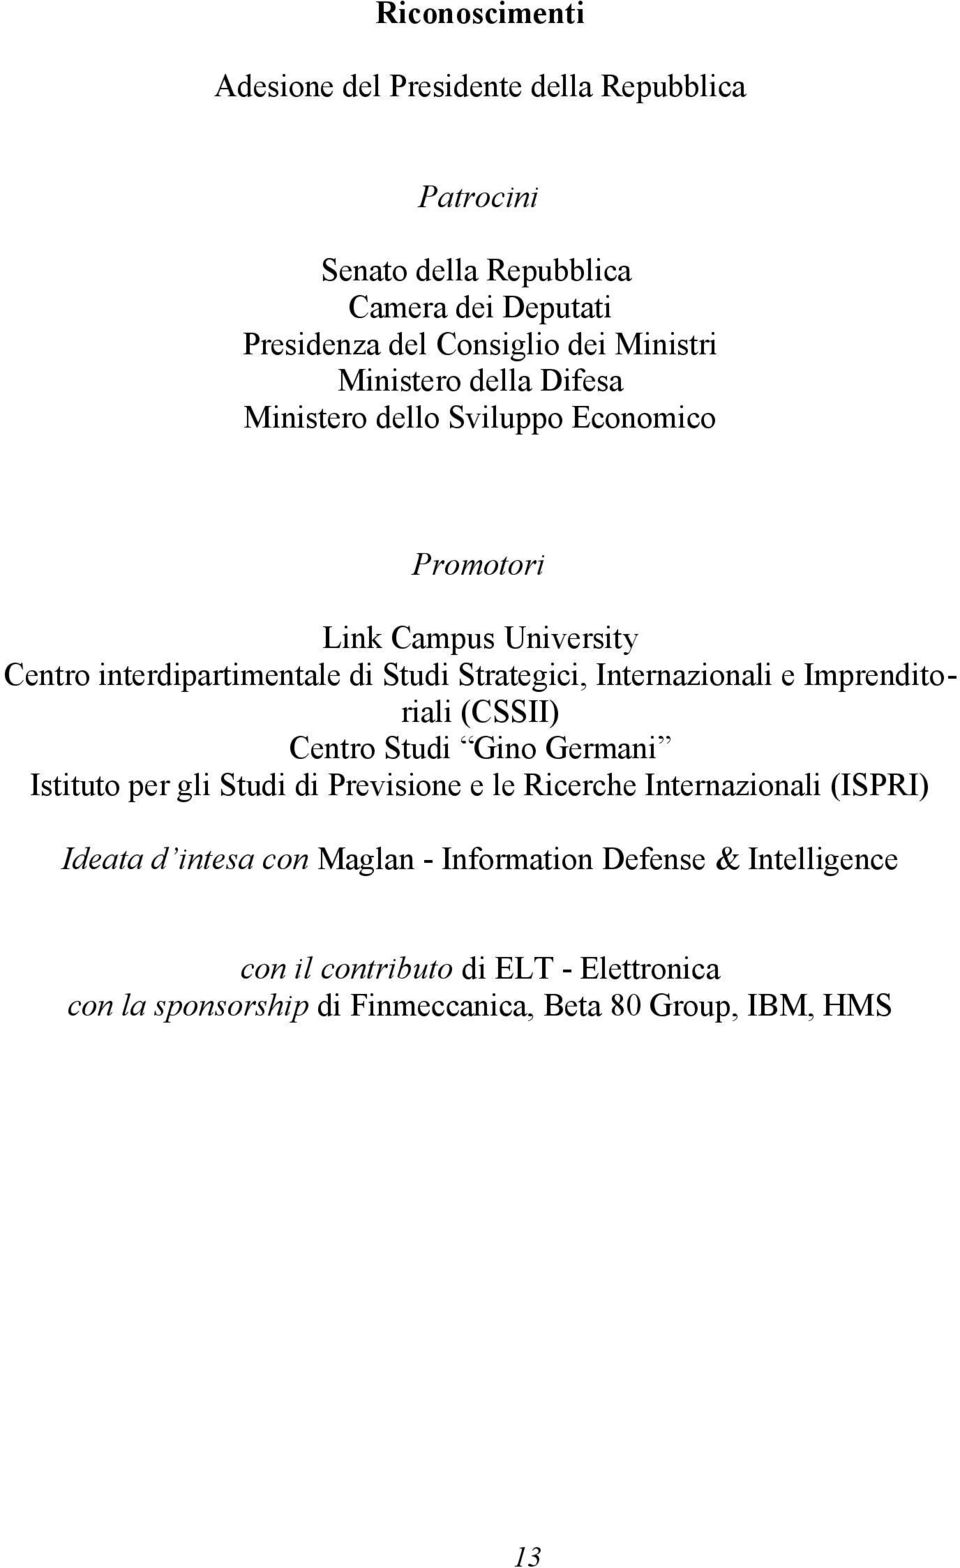 Internazionali e Imprenditoriali (CSSII) Centro Studi Gino Germani Istituto per gli Studi di Previsione e le Ricerche Internazionali (ISPRI) Ideata